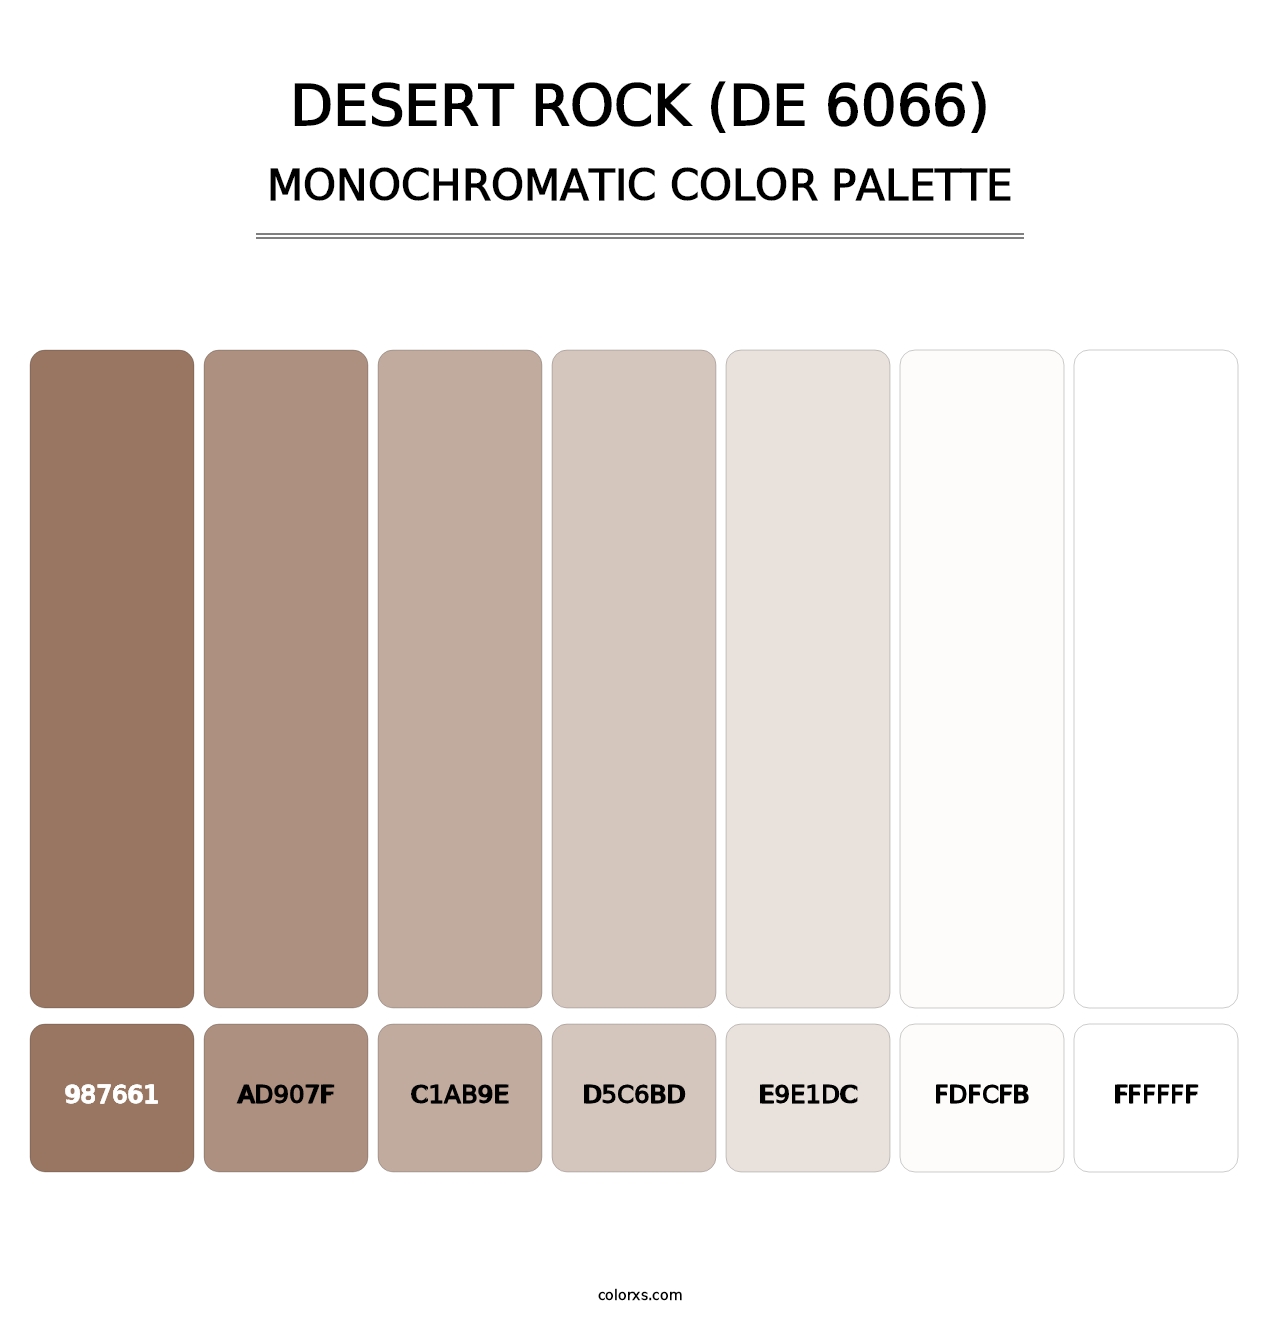 Desert Rock (DE 6066) - Monochromatic Color Palette